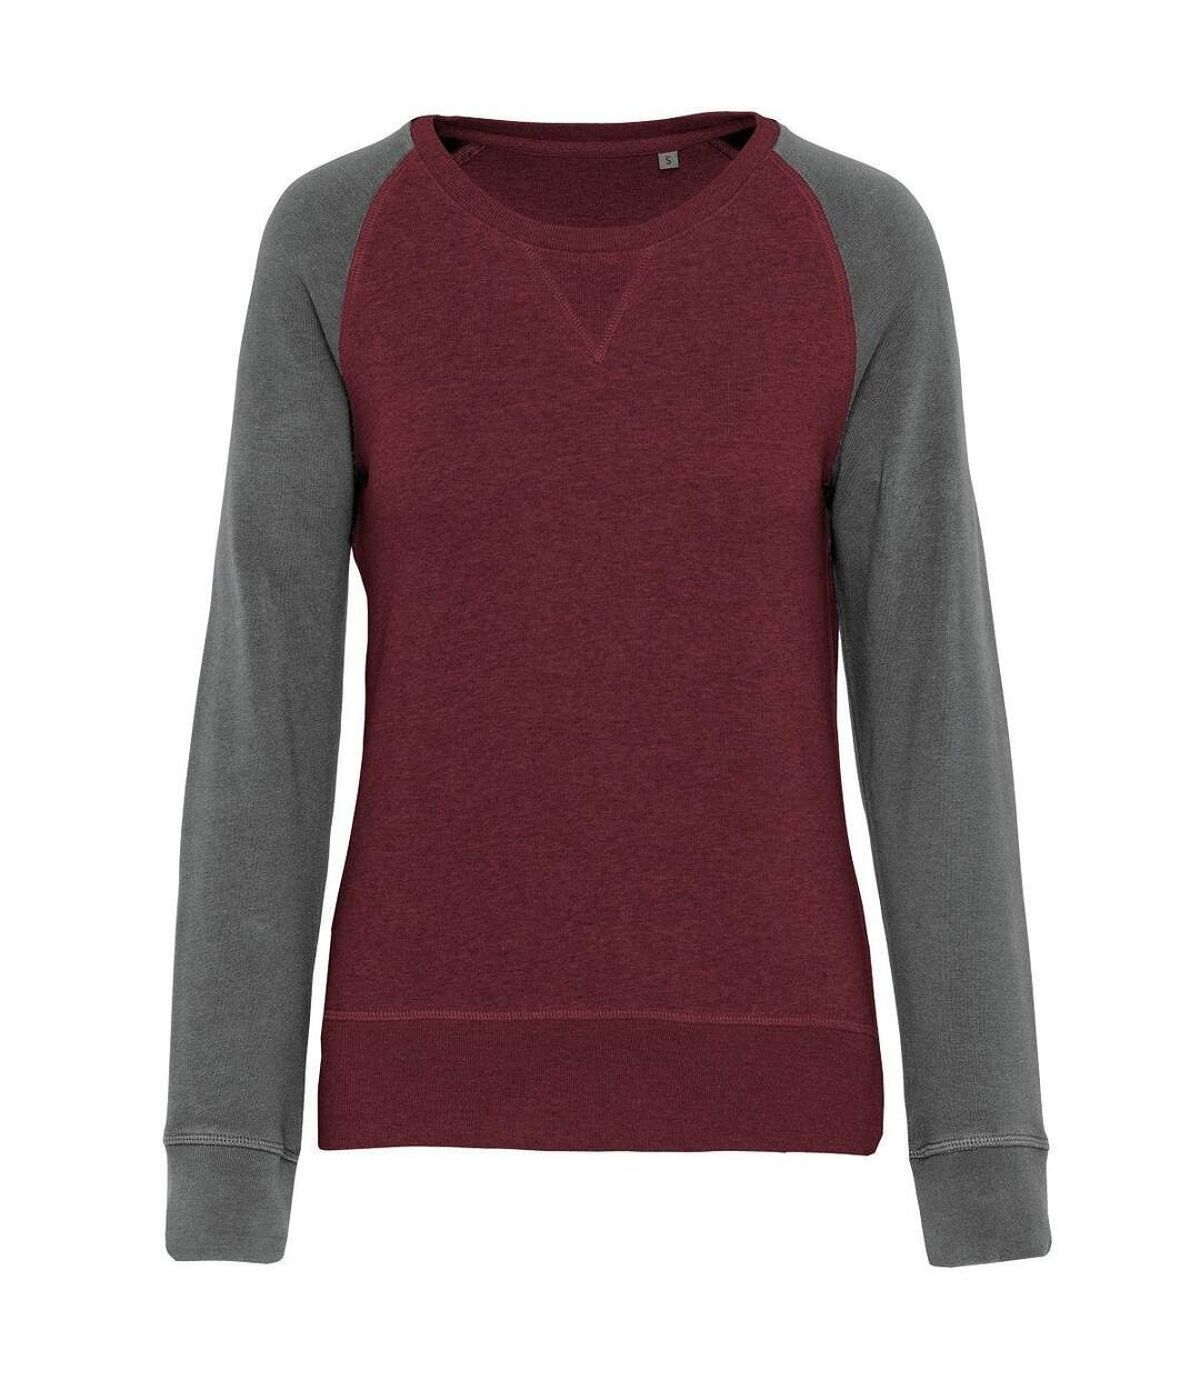 Sweat shirt coton bio - Femme - K492 - rouge vin et gris